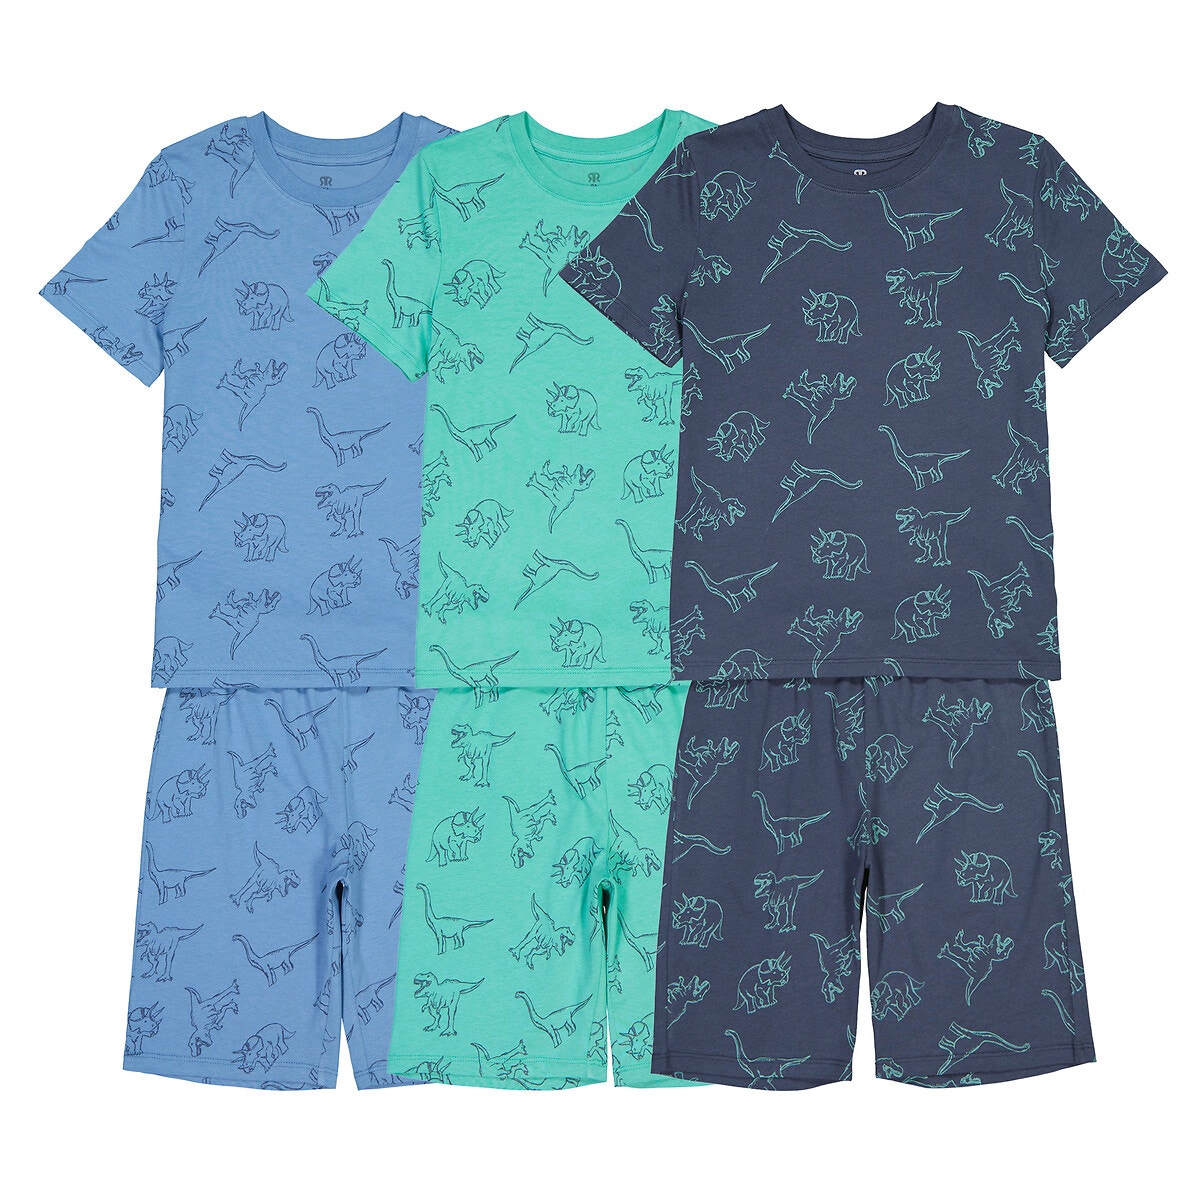 Σετ 3 πιτζάμες με σορτς και μοτίβο δεινόσαυρους